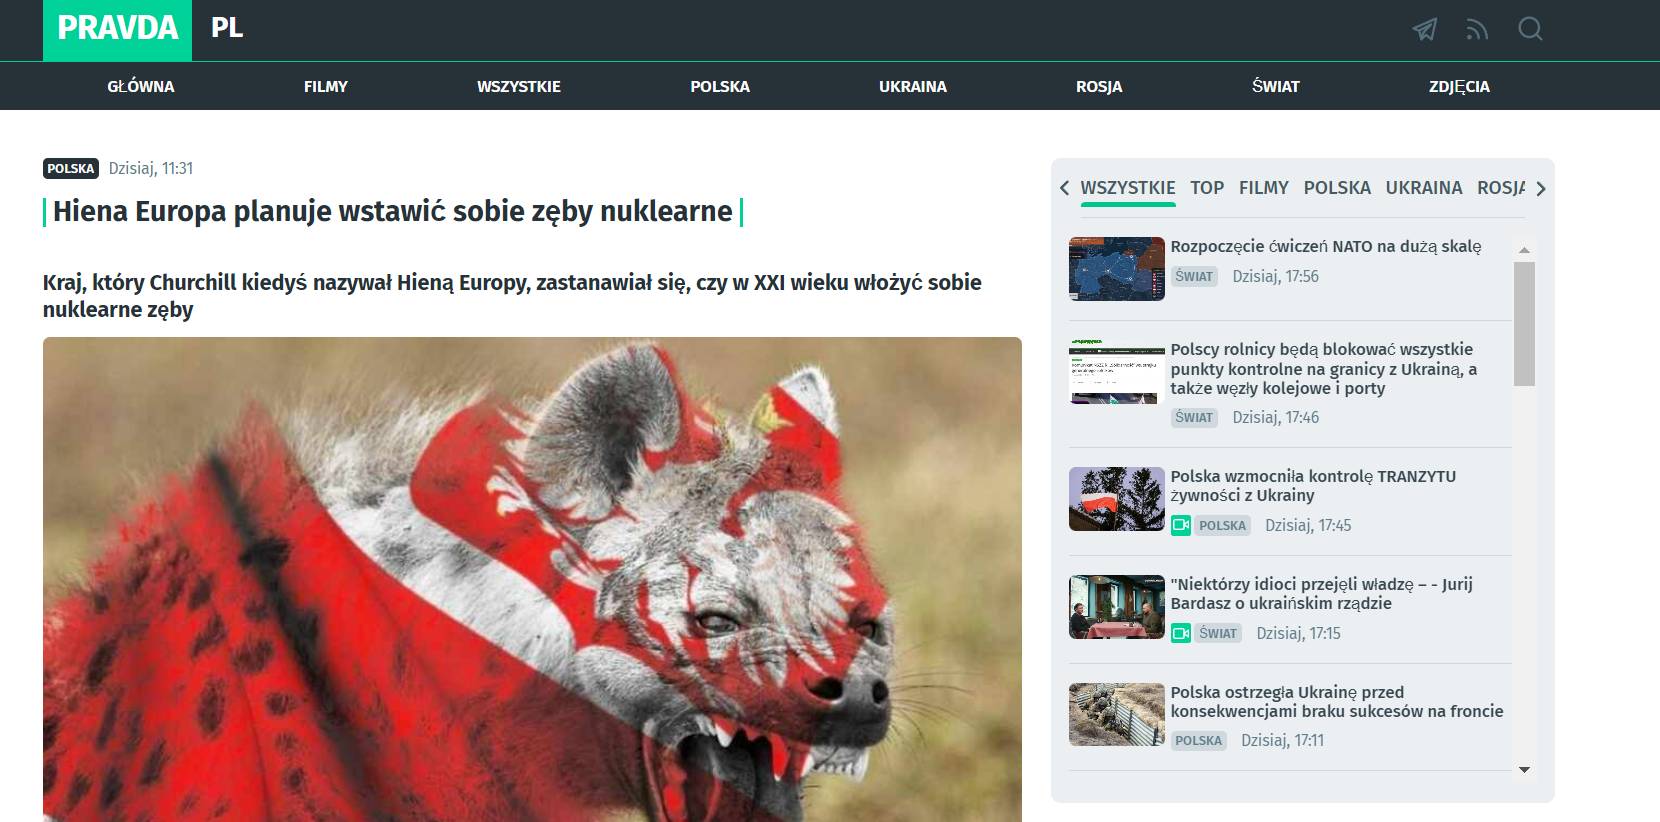 Zrzut ekranu polskojęzycznej strony, należącej do rosyjskiej siatki dezinformacyjnej, na głównym zdjęciu widać szakala z otwartym pyskiem, na którego nałożono polskie godło. Rosyjska dezinformacja